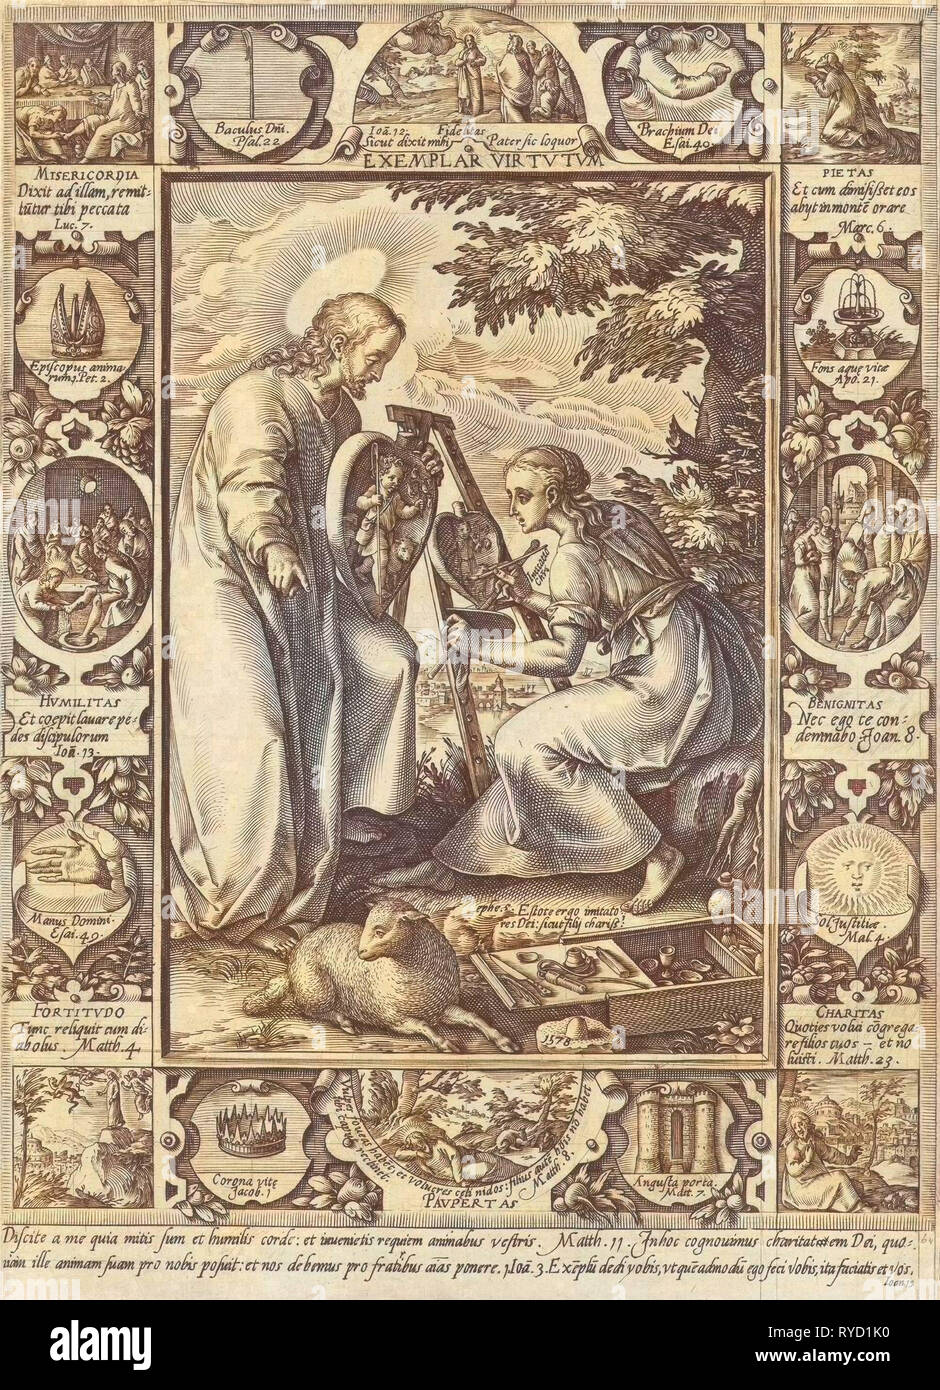 Eine Frau sitzt hinter einer Staffelei und malt das Christ Kind in einem Herzen am Beispiel, dass Christus ihr zeigt, ein Rahmen mit verschiedenen Tugenden Christi mit allegorischen Elementen, drucken Teekocher: Hendrick Goltzius, Dating 1578 Stockfoto